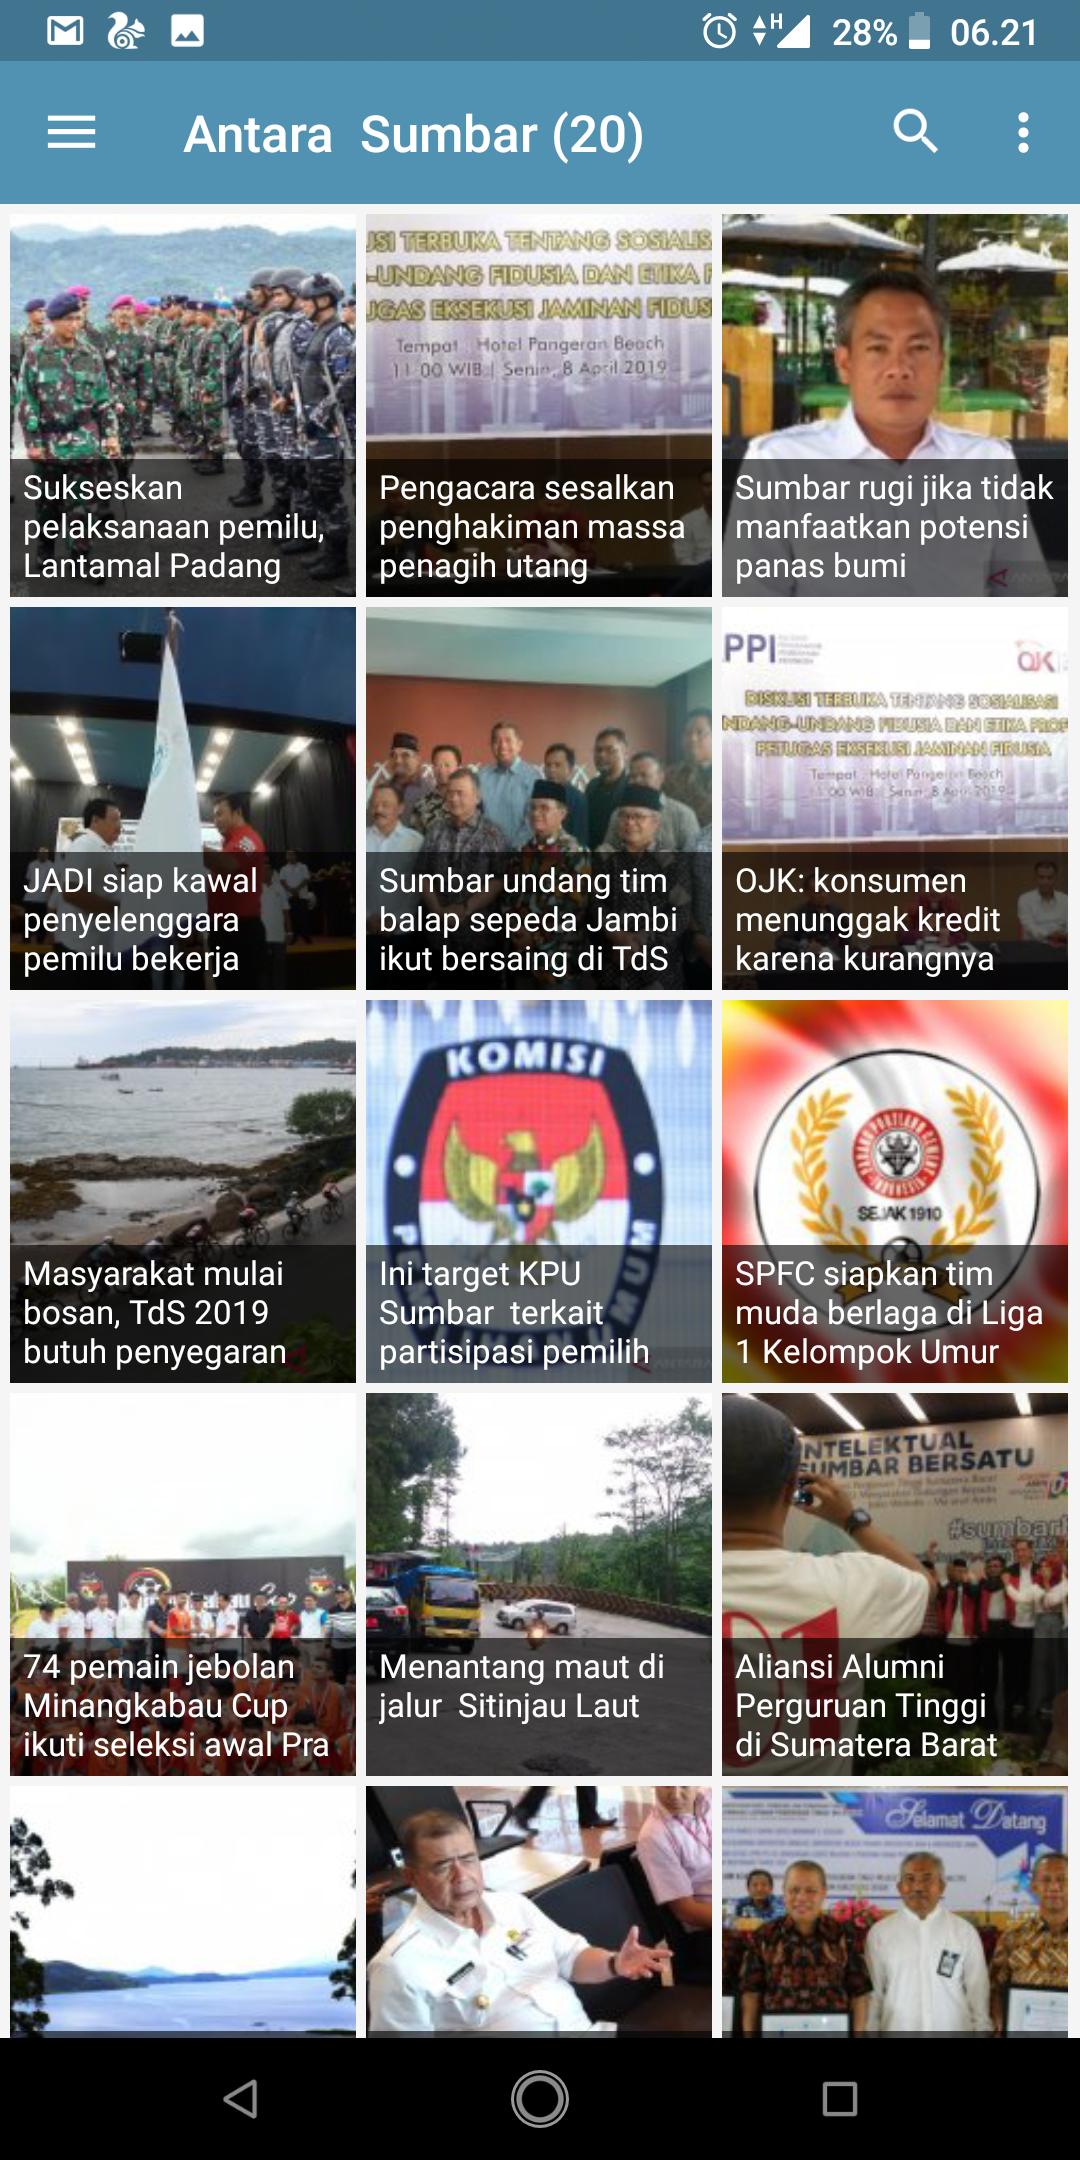 Koran Sumbar : Berita Sumatera Barat 1.3 Screenshot 2